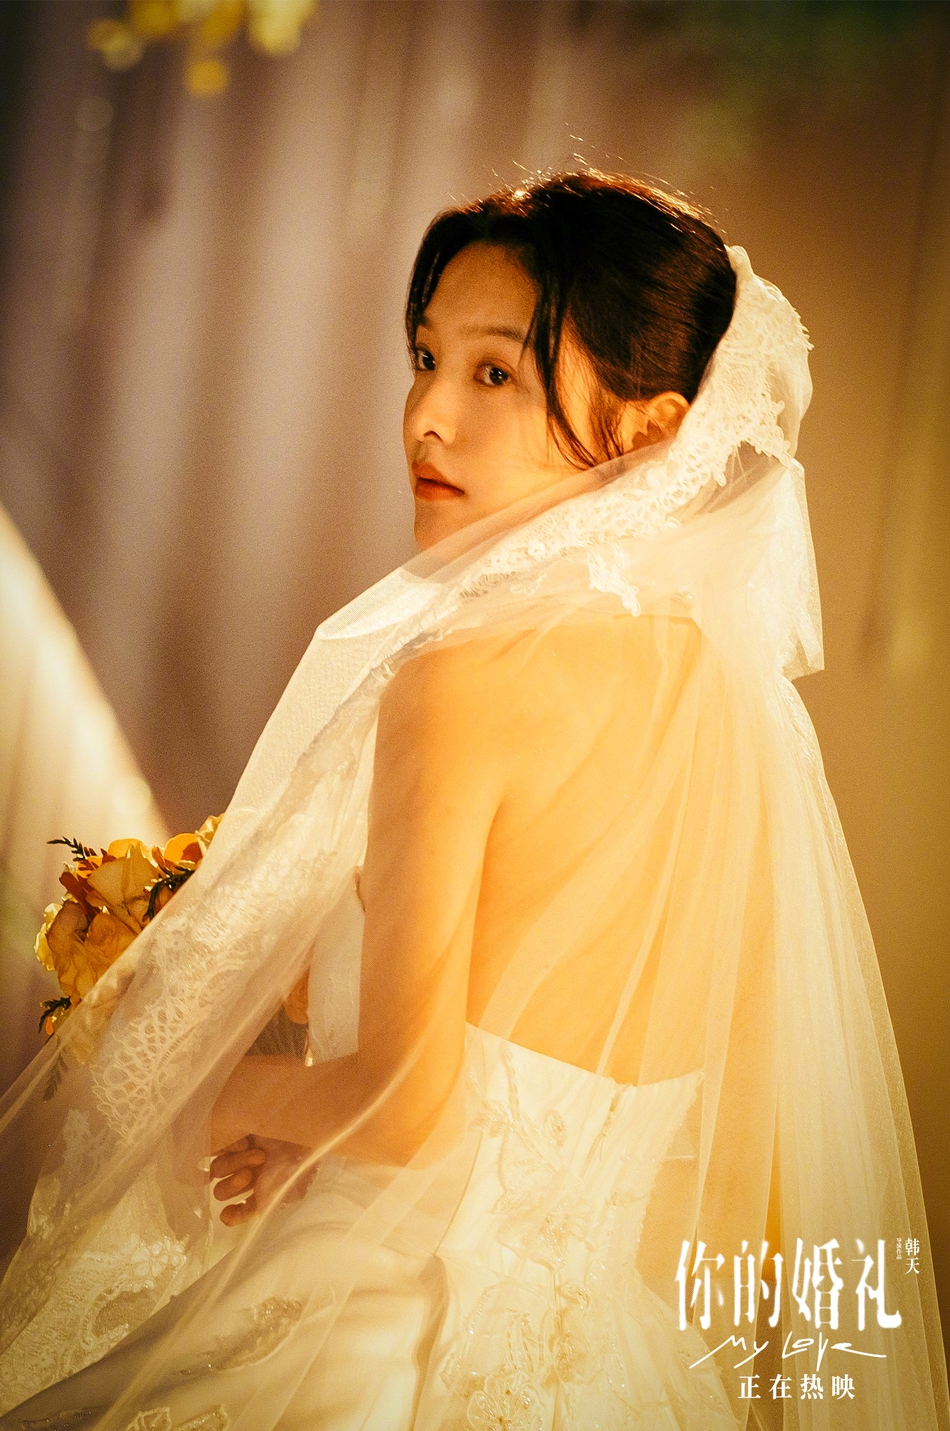 组图:《你的婚礼》章若楠婚纱造型唯美 对镜甜笑是初恋的模样